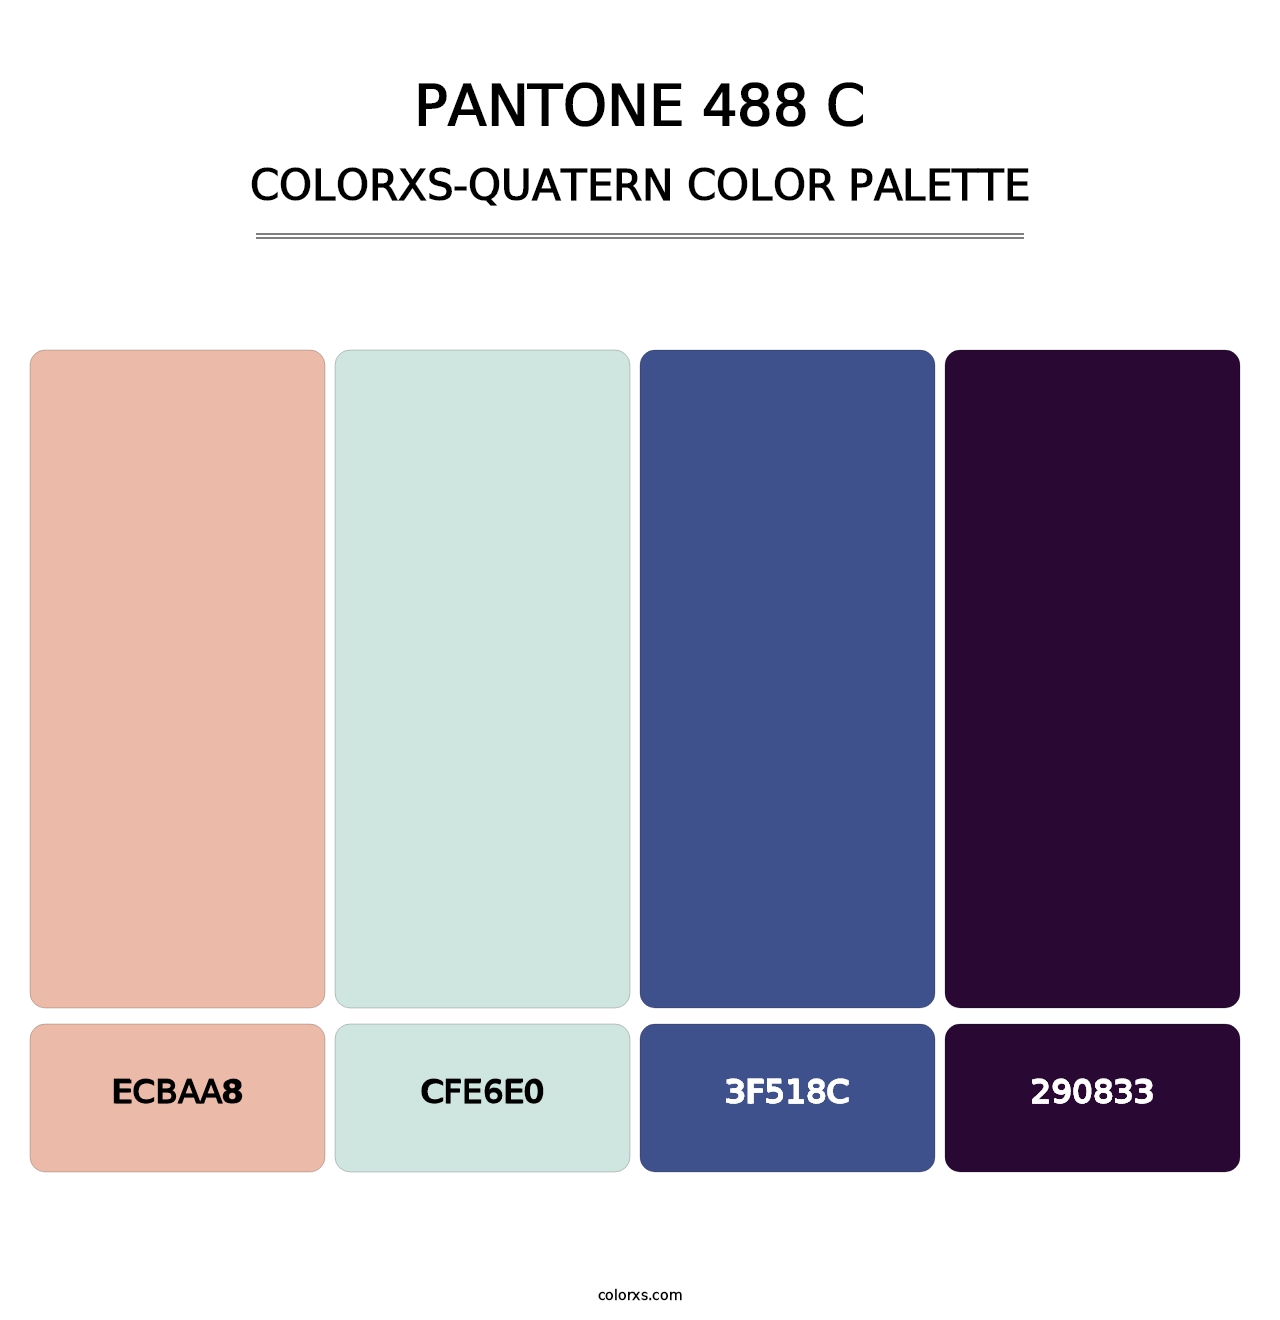 PANTONE 488 C - Colorxs Quatern Palette